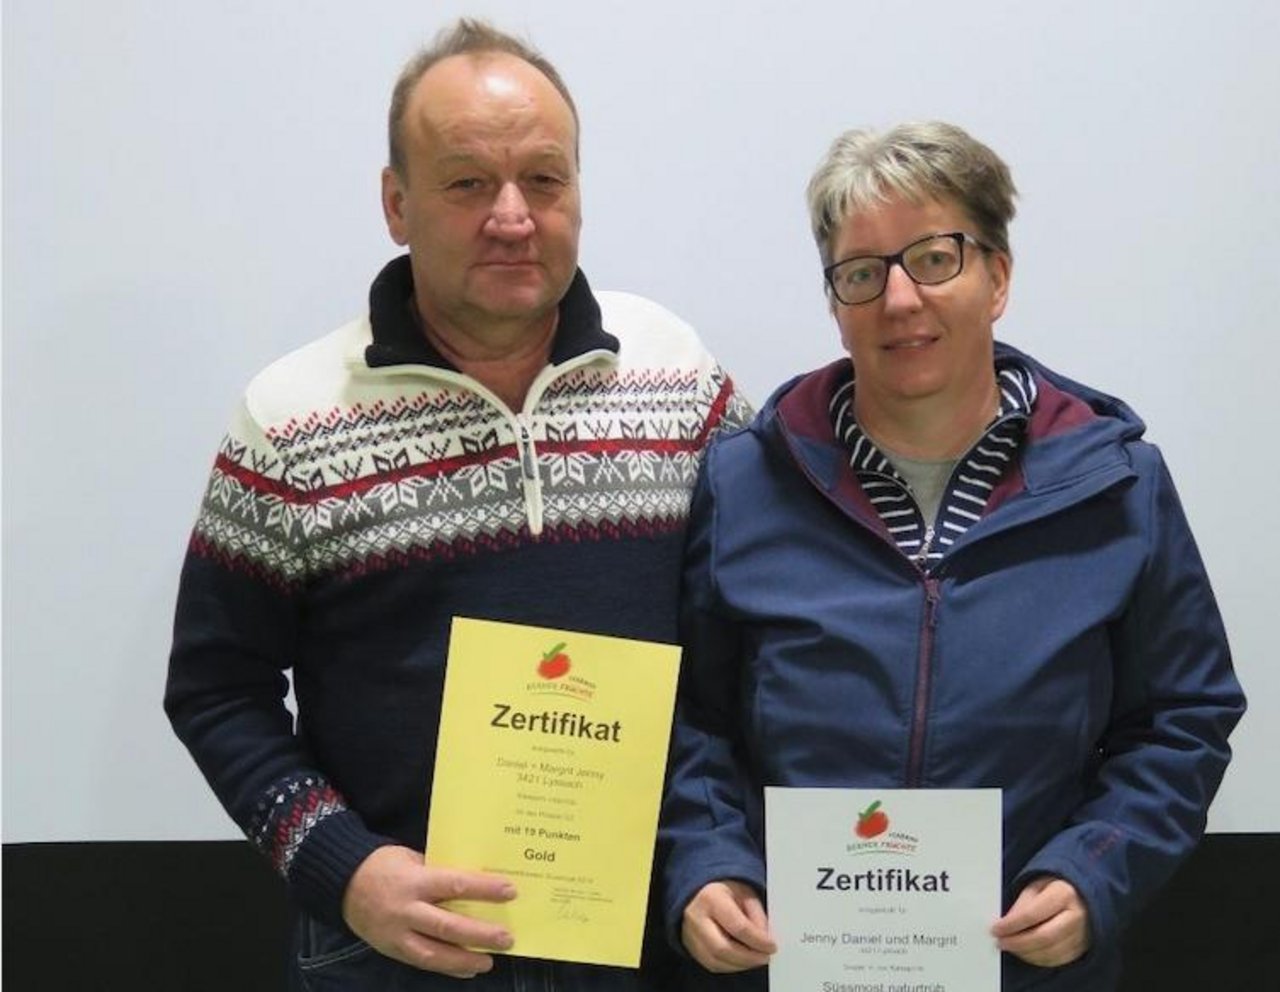 Daniel und Margrit Jenny aus Lyssach gewannen in der Kategorie "Süssmost naturtrüb" und wurden ausserdem Jahressieger 2019. (Bilder zVg)